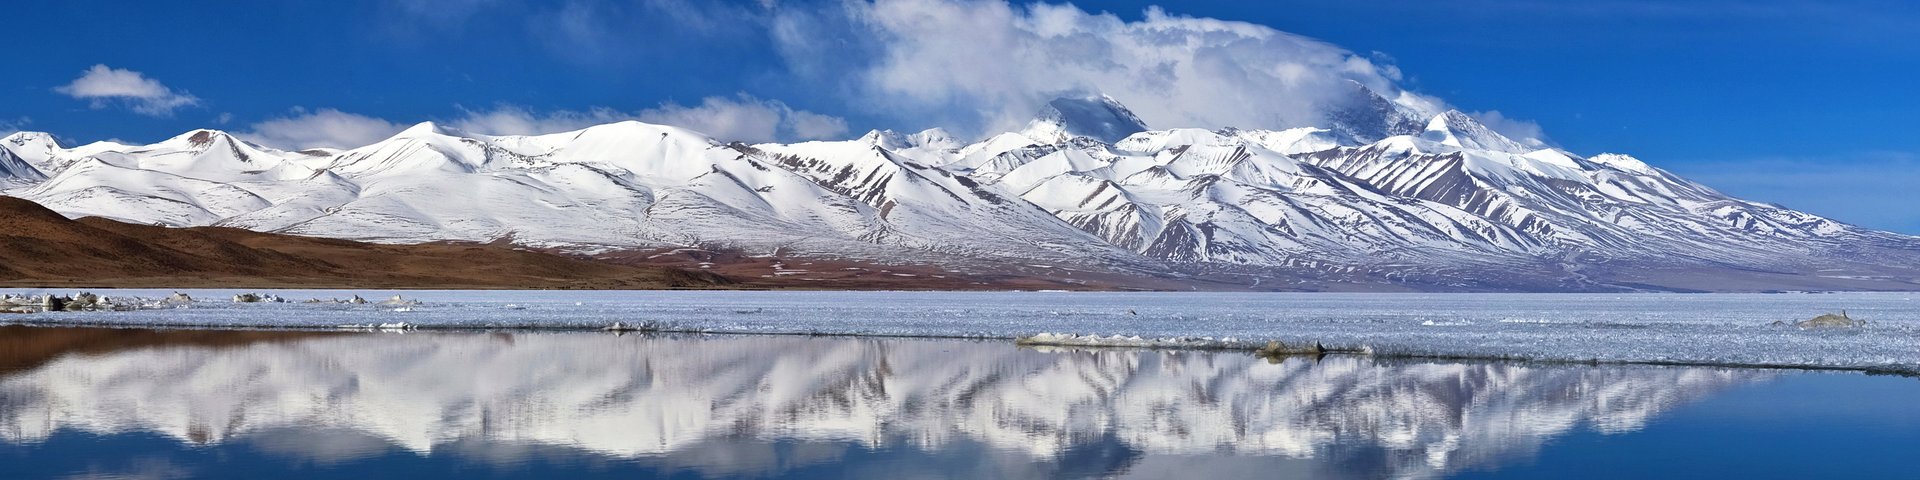 Spiegelung im Manasarovar-See beim Kailash